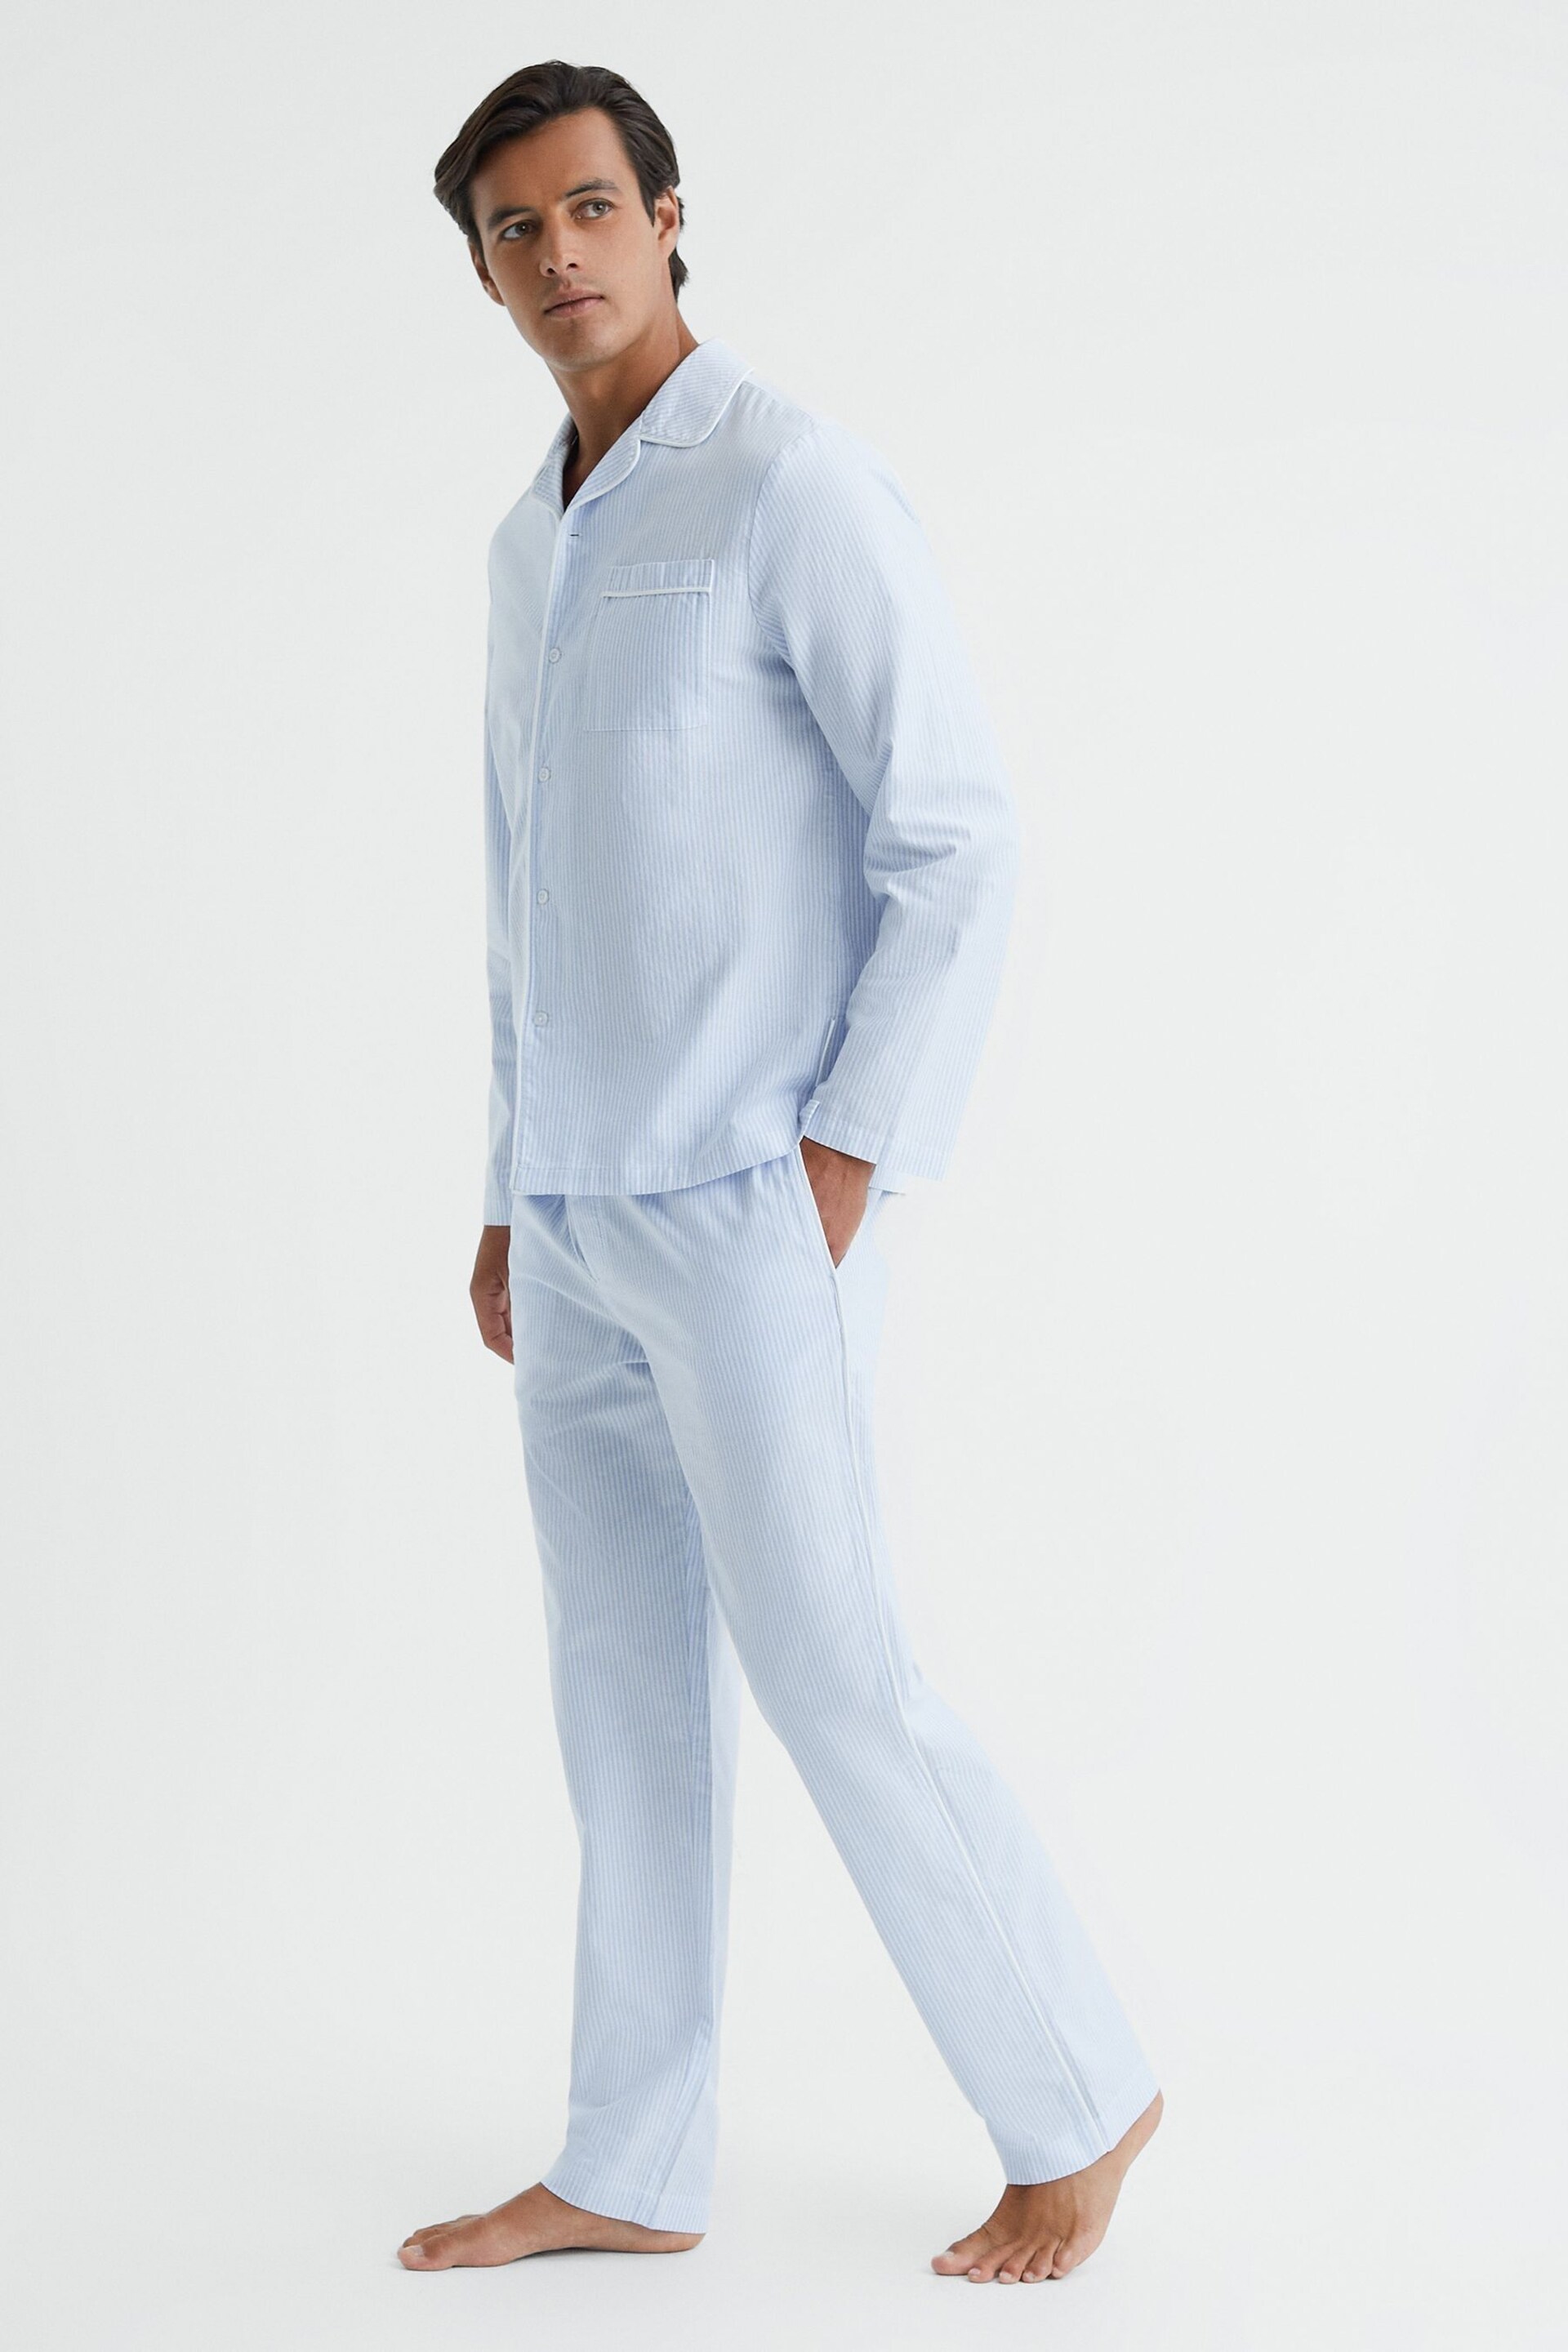 Reiss Blue/White Westley Striped Cotton Button-Through Pyjama Shirt - Image 3 of 5